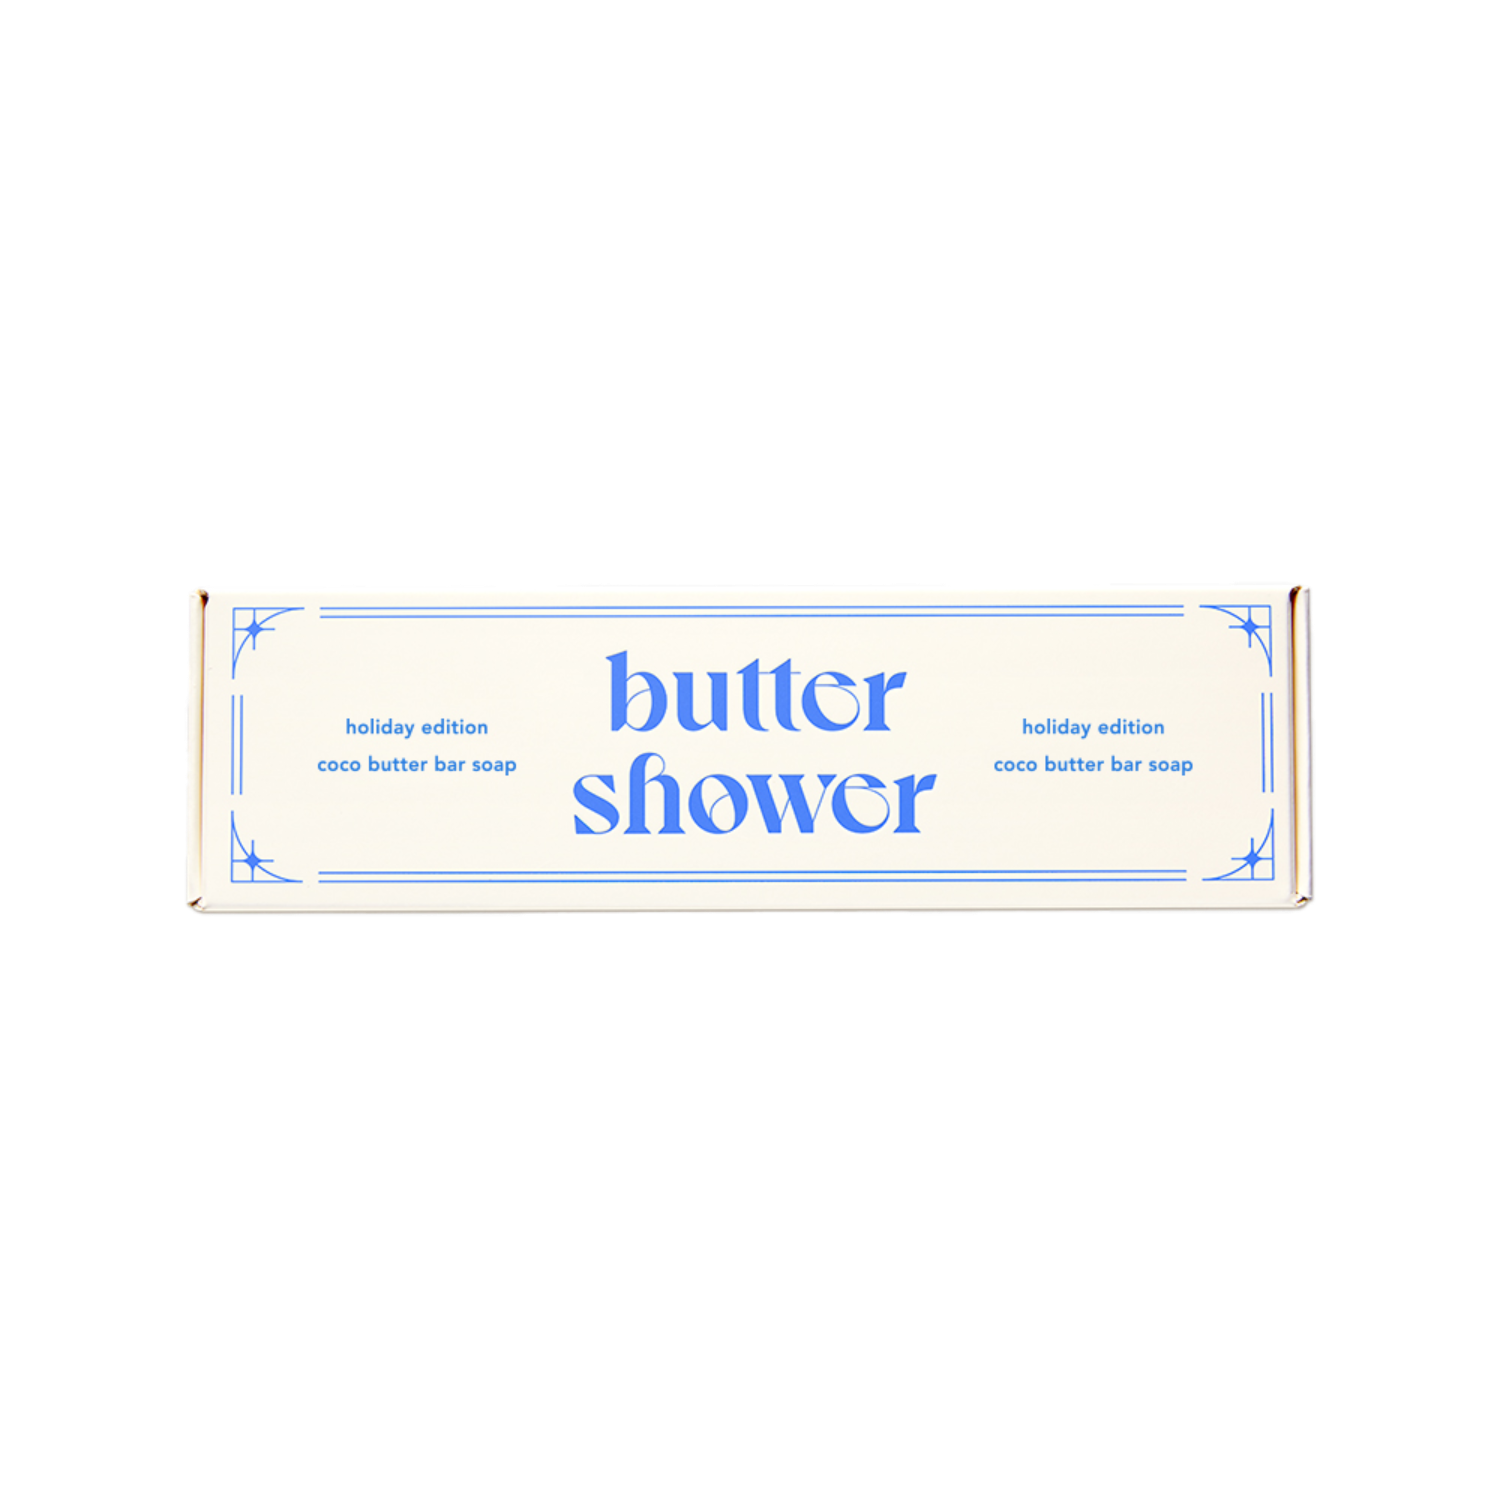 홀리데이 에디션 코코 버터 바 솝 - 버터샤워 butter shower